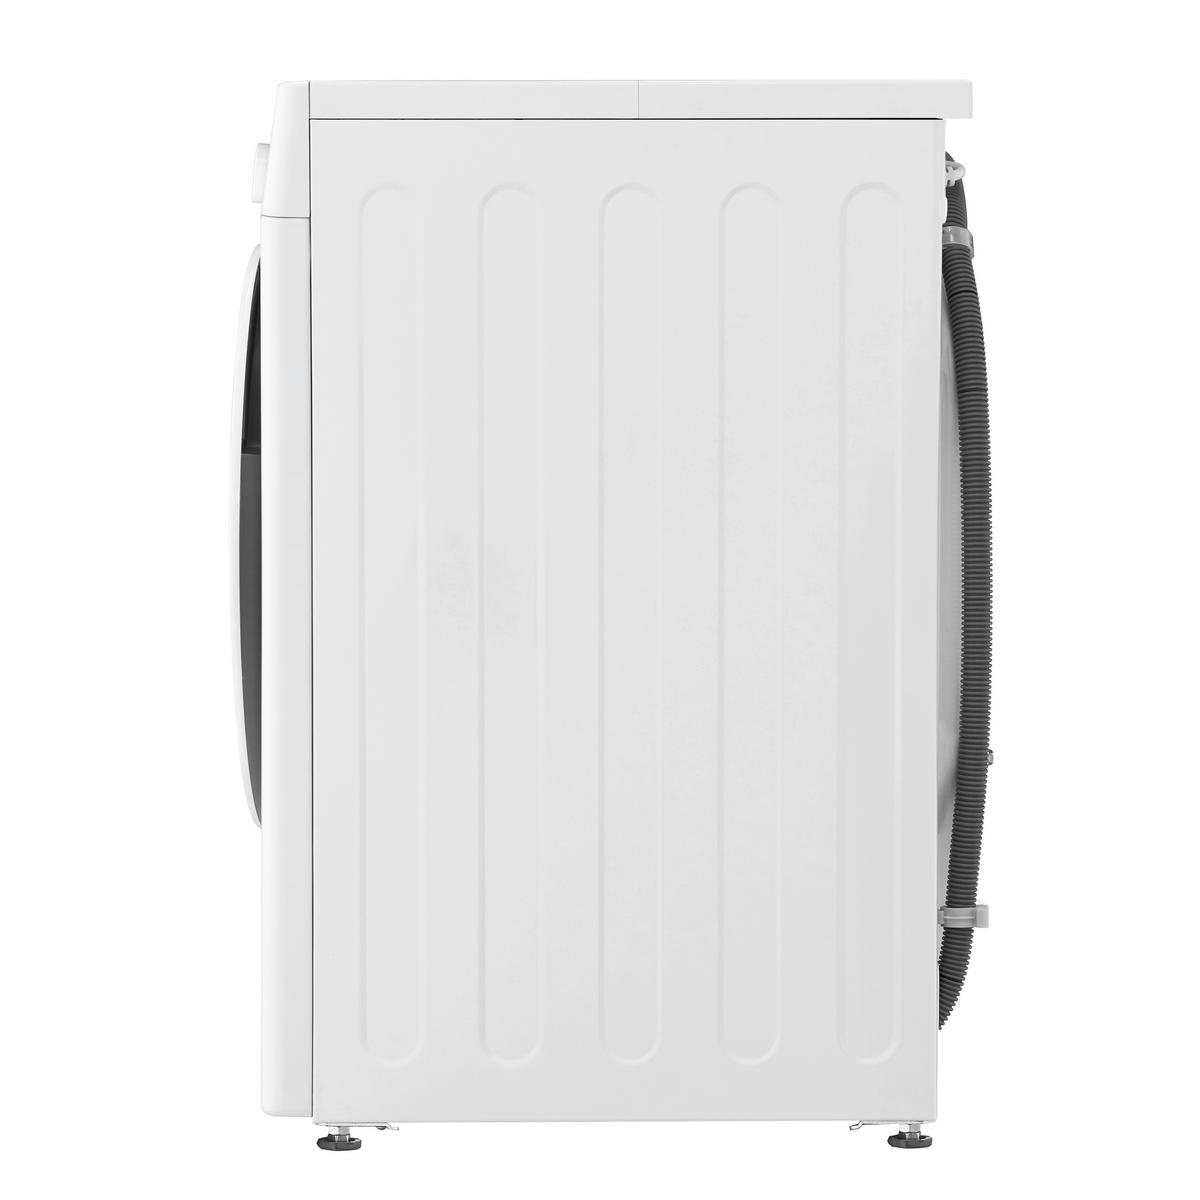 LG Waschvollautomat F4WR3193 weiß ca. cm 60x85x57 B/H/T: online bei ▷ POCO kaufen